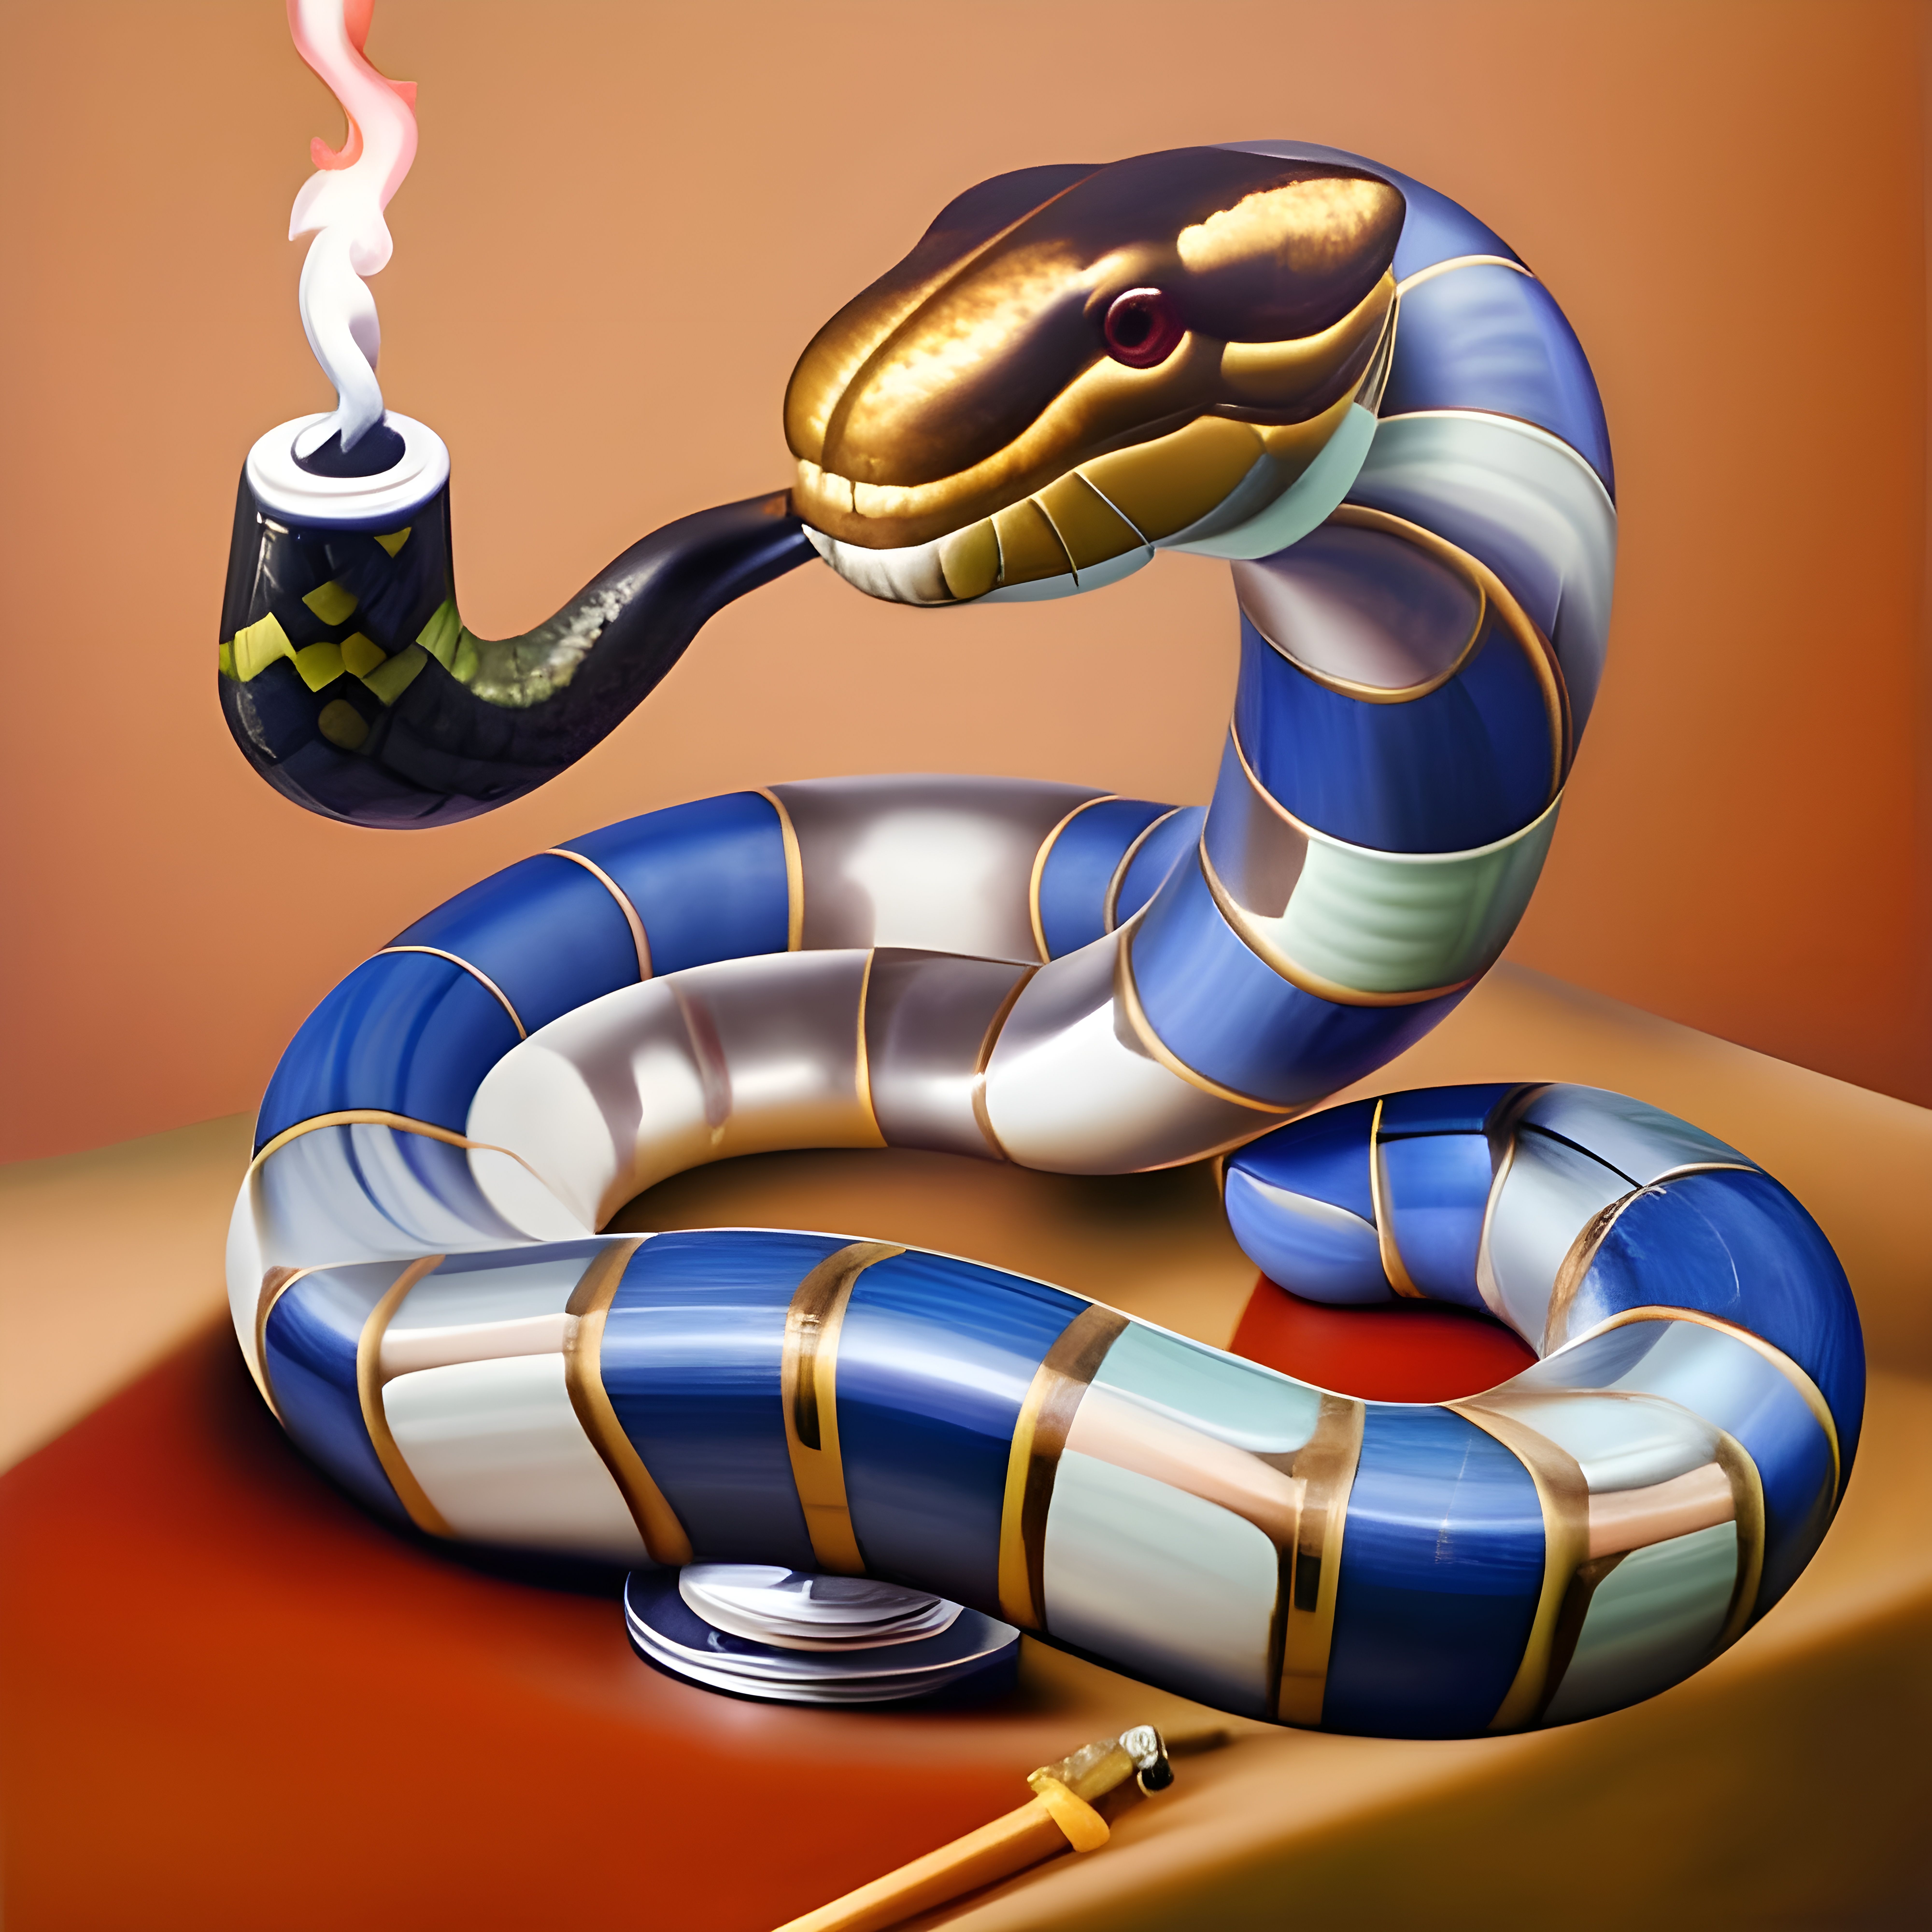 Smoking Snakes começou a tocar : r/AgiotasClub